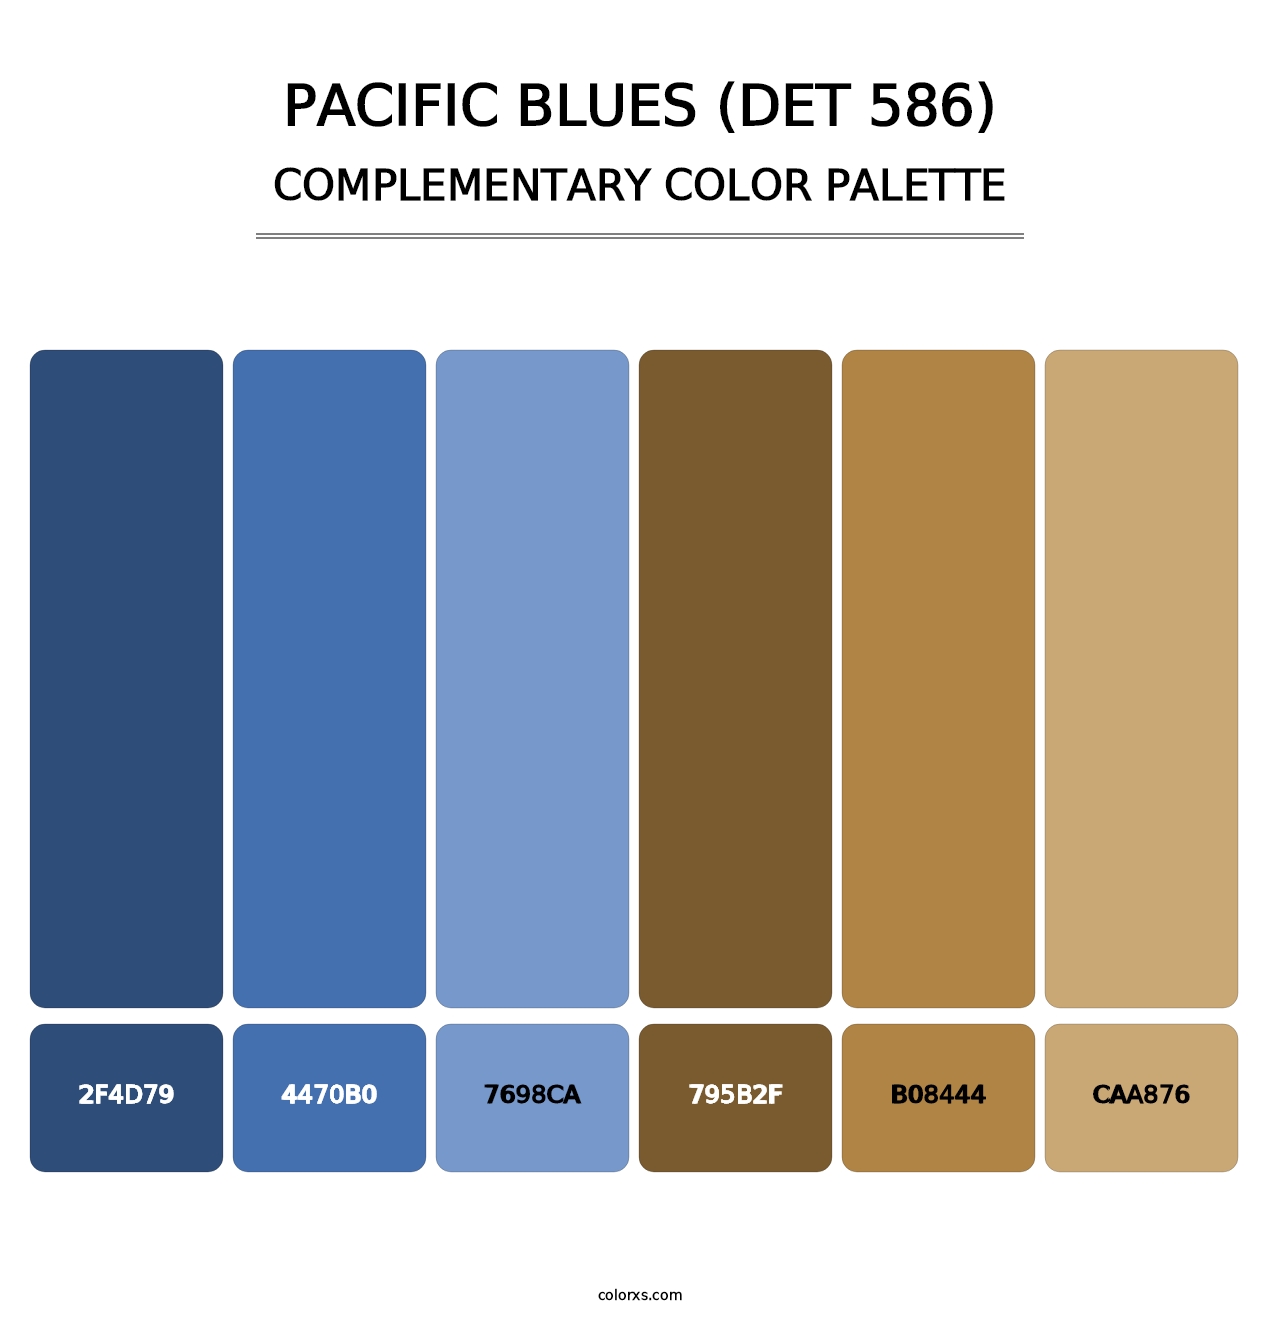 Pacific Blues (DET 586) - Complementary Color Palette